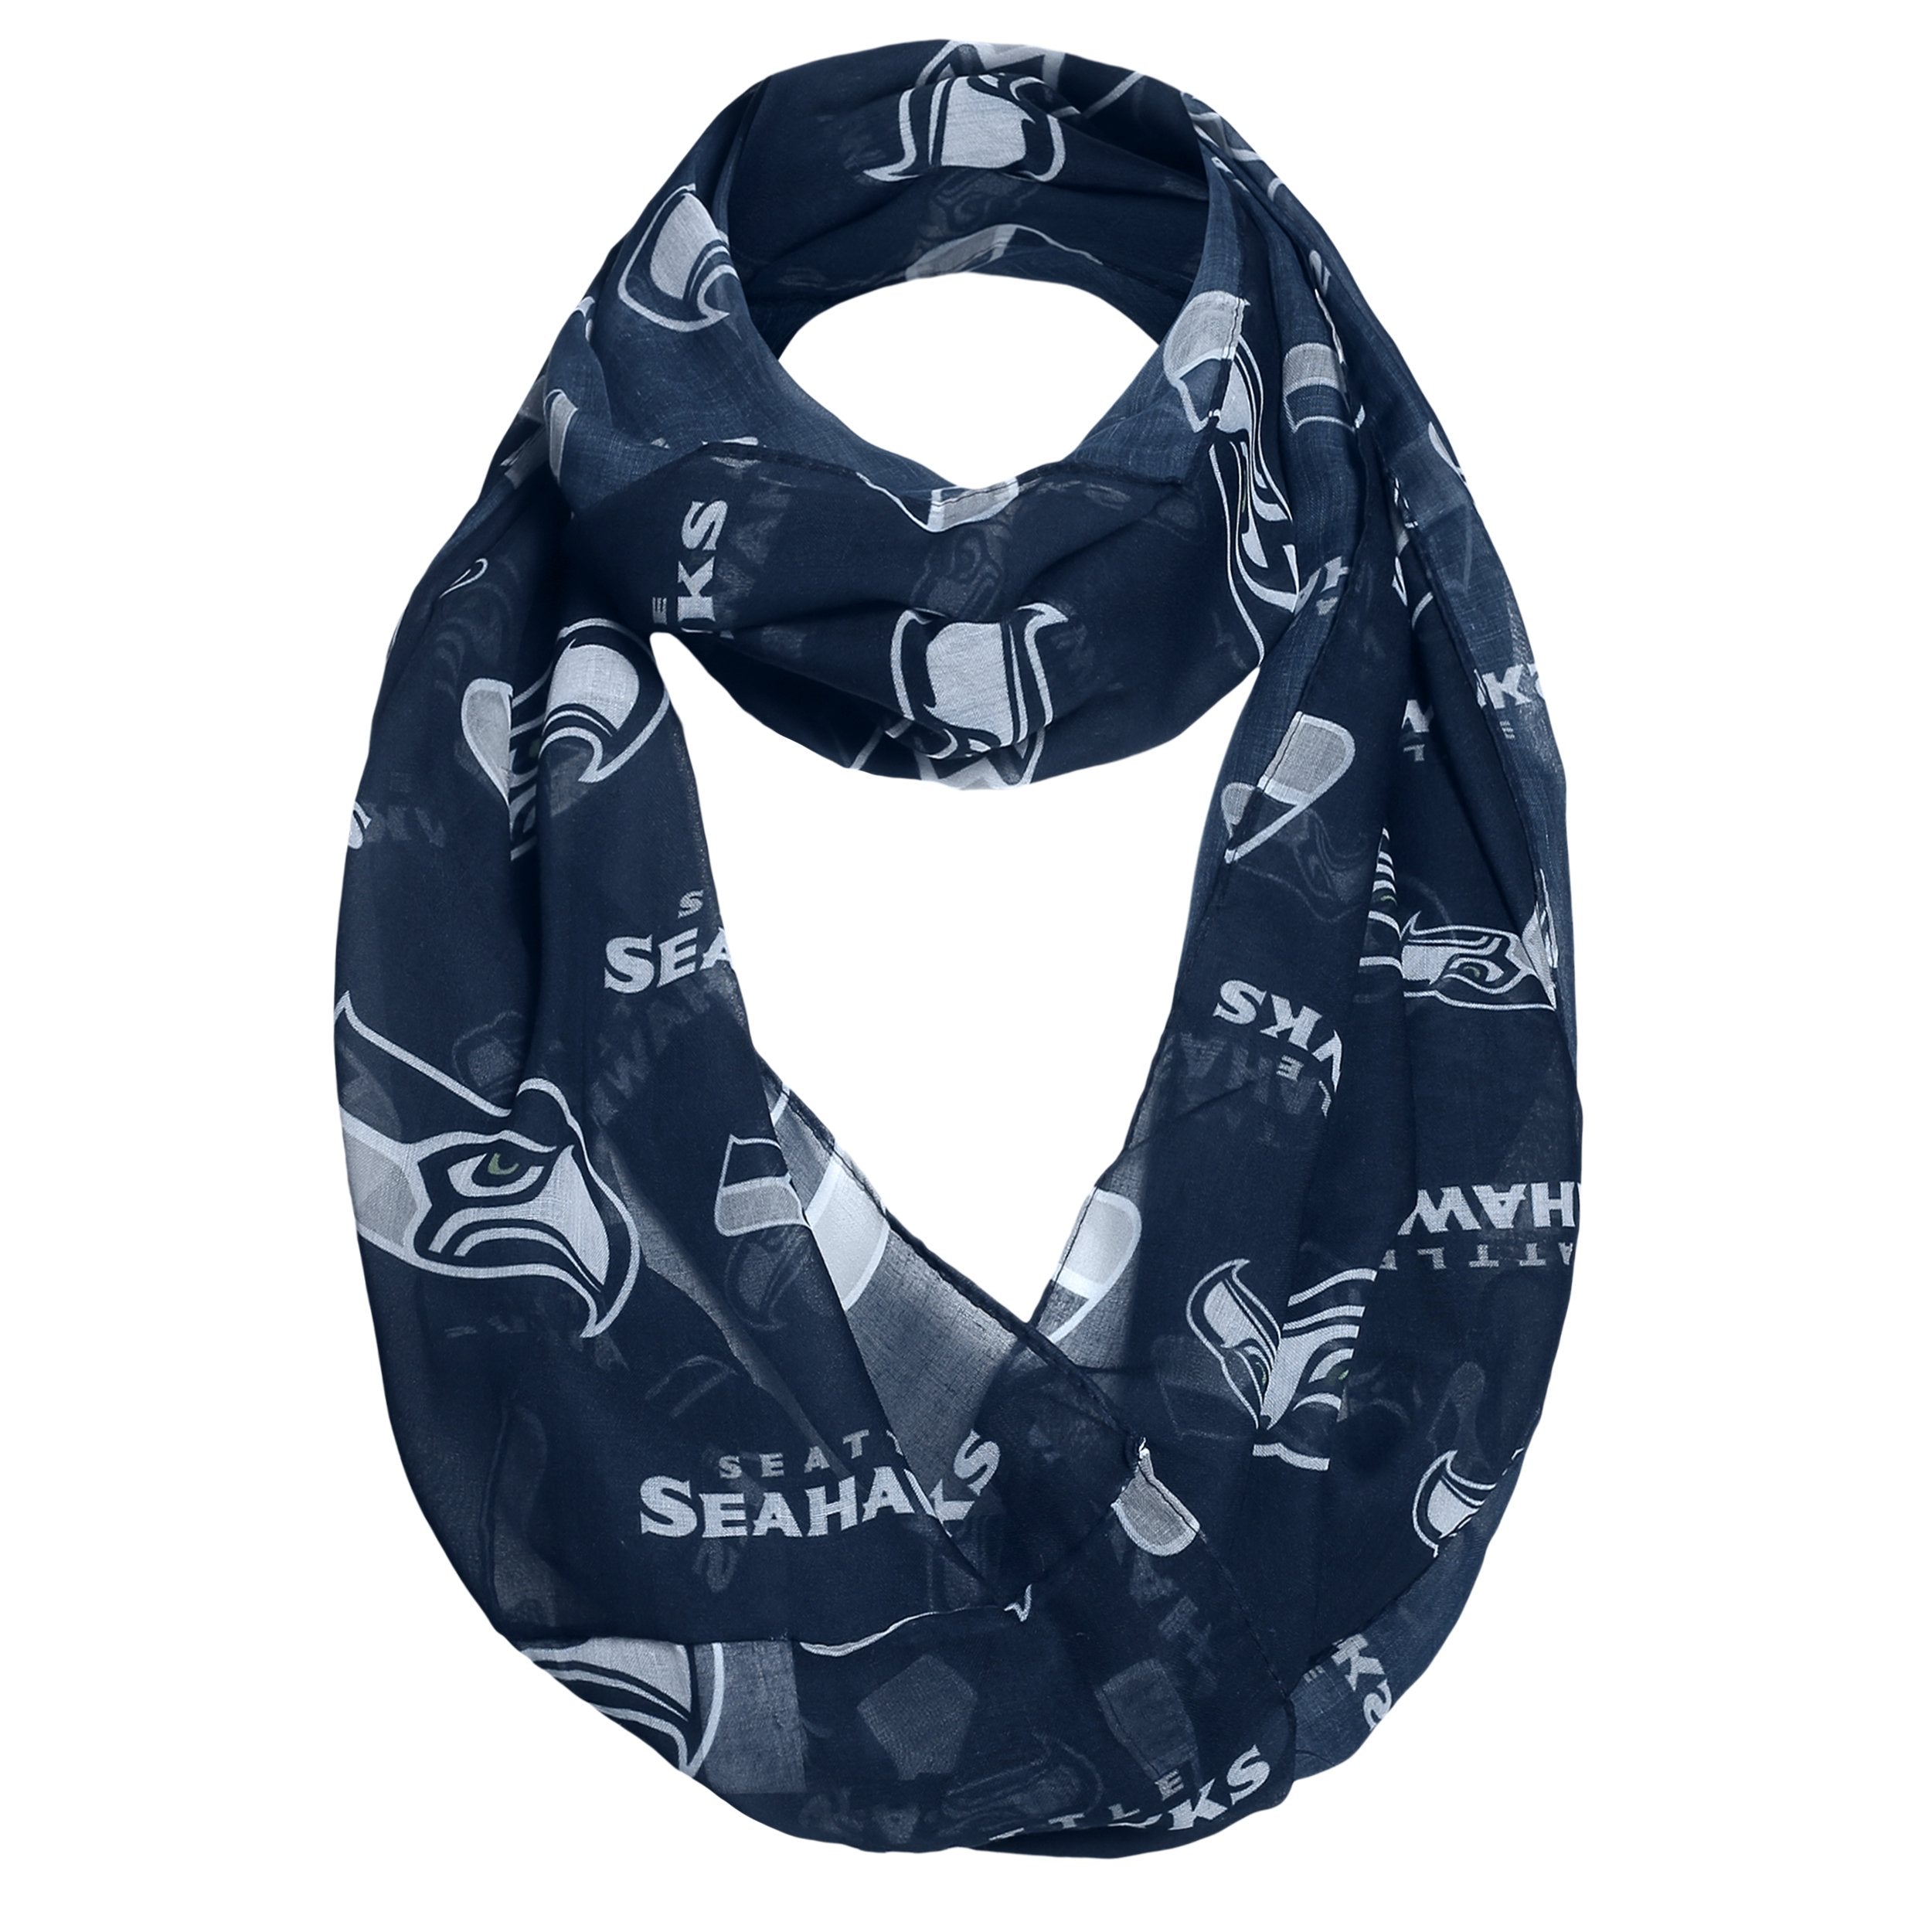 Seattle Seahawks Infinity Scarf - Sports Fan Shop